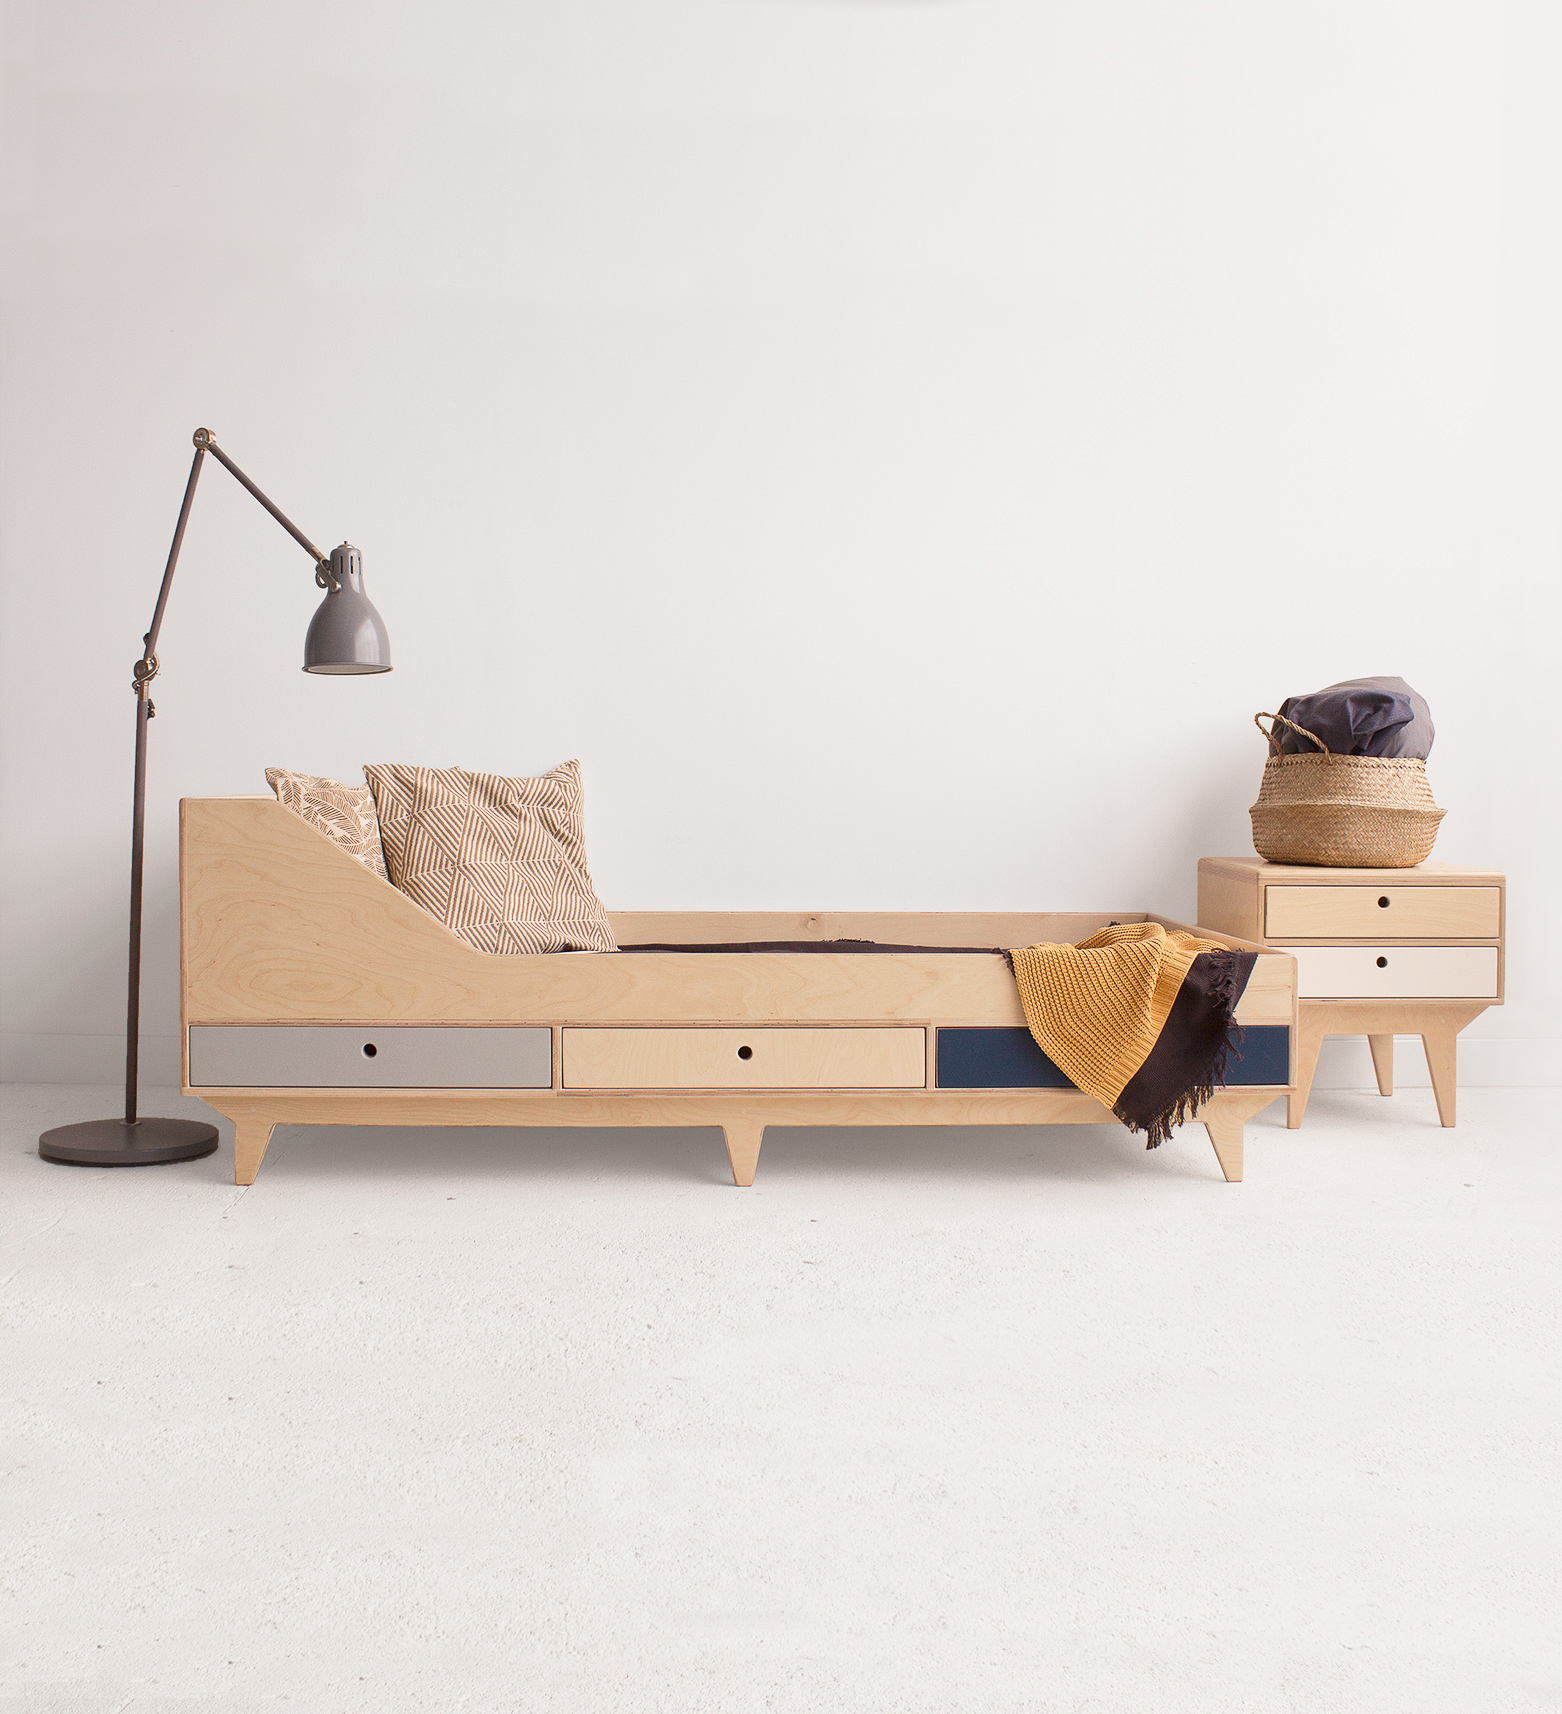 wood republic drewniane łóżko pojedyncze z drewna ze sklejki do sypialni dla dziecka